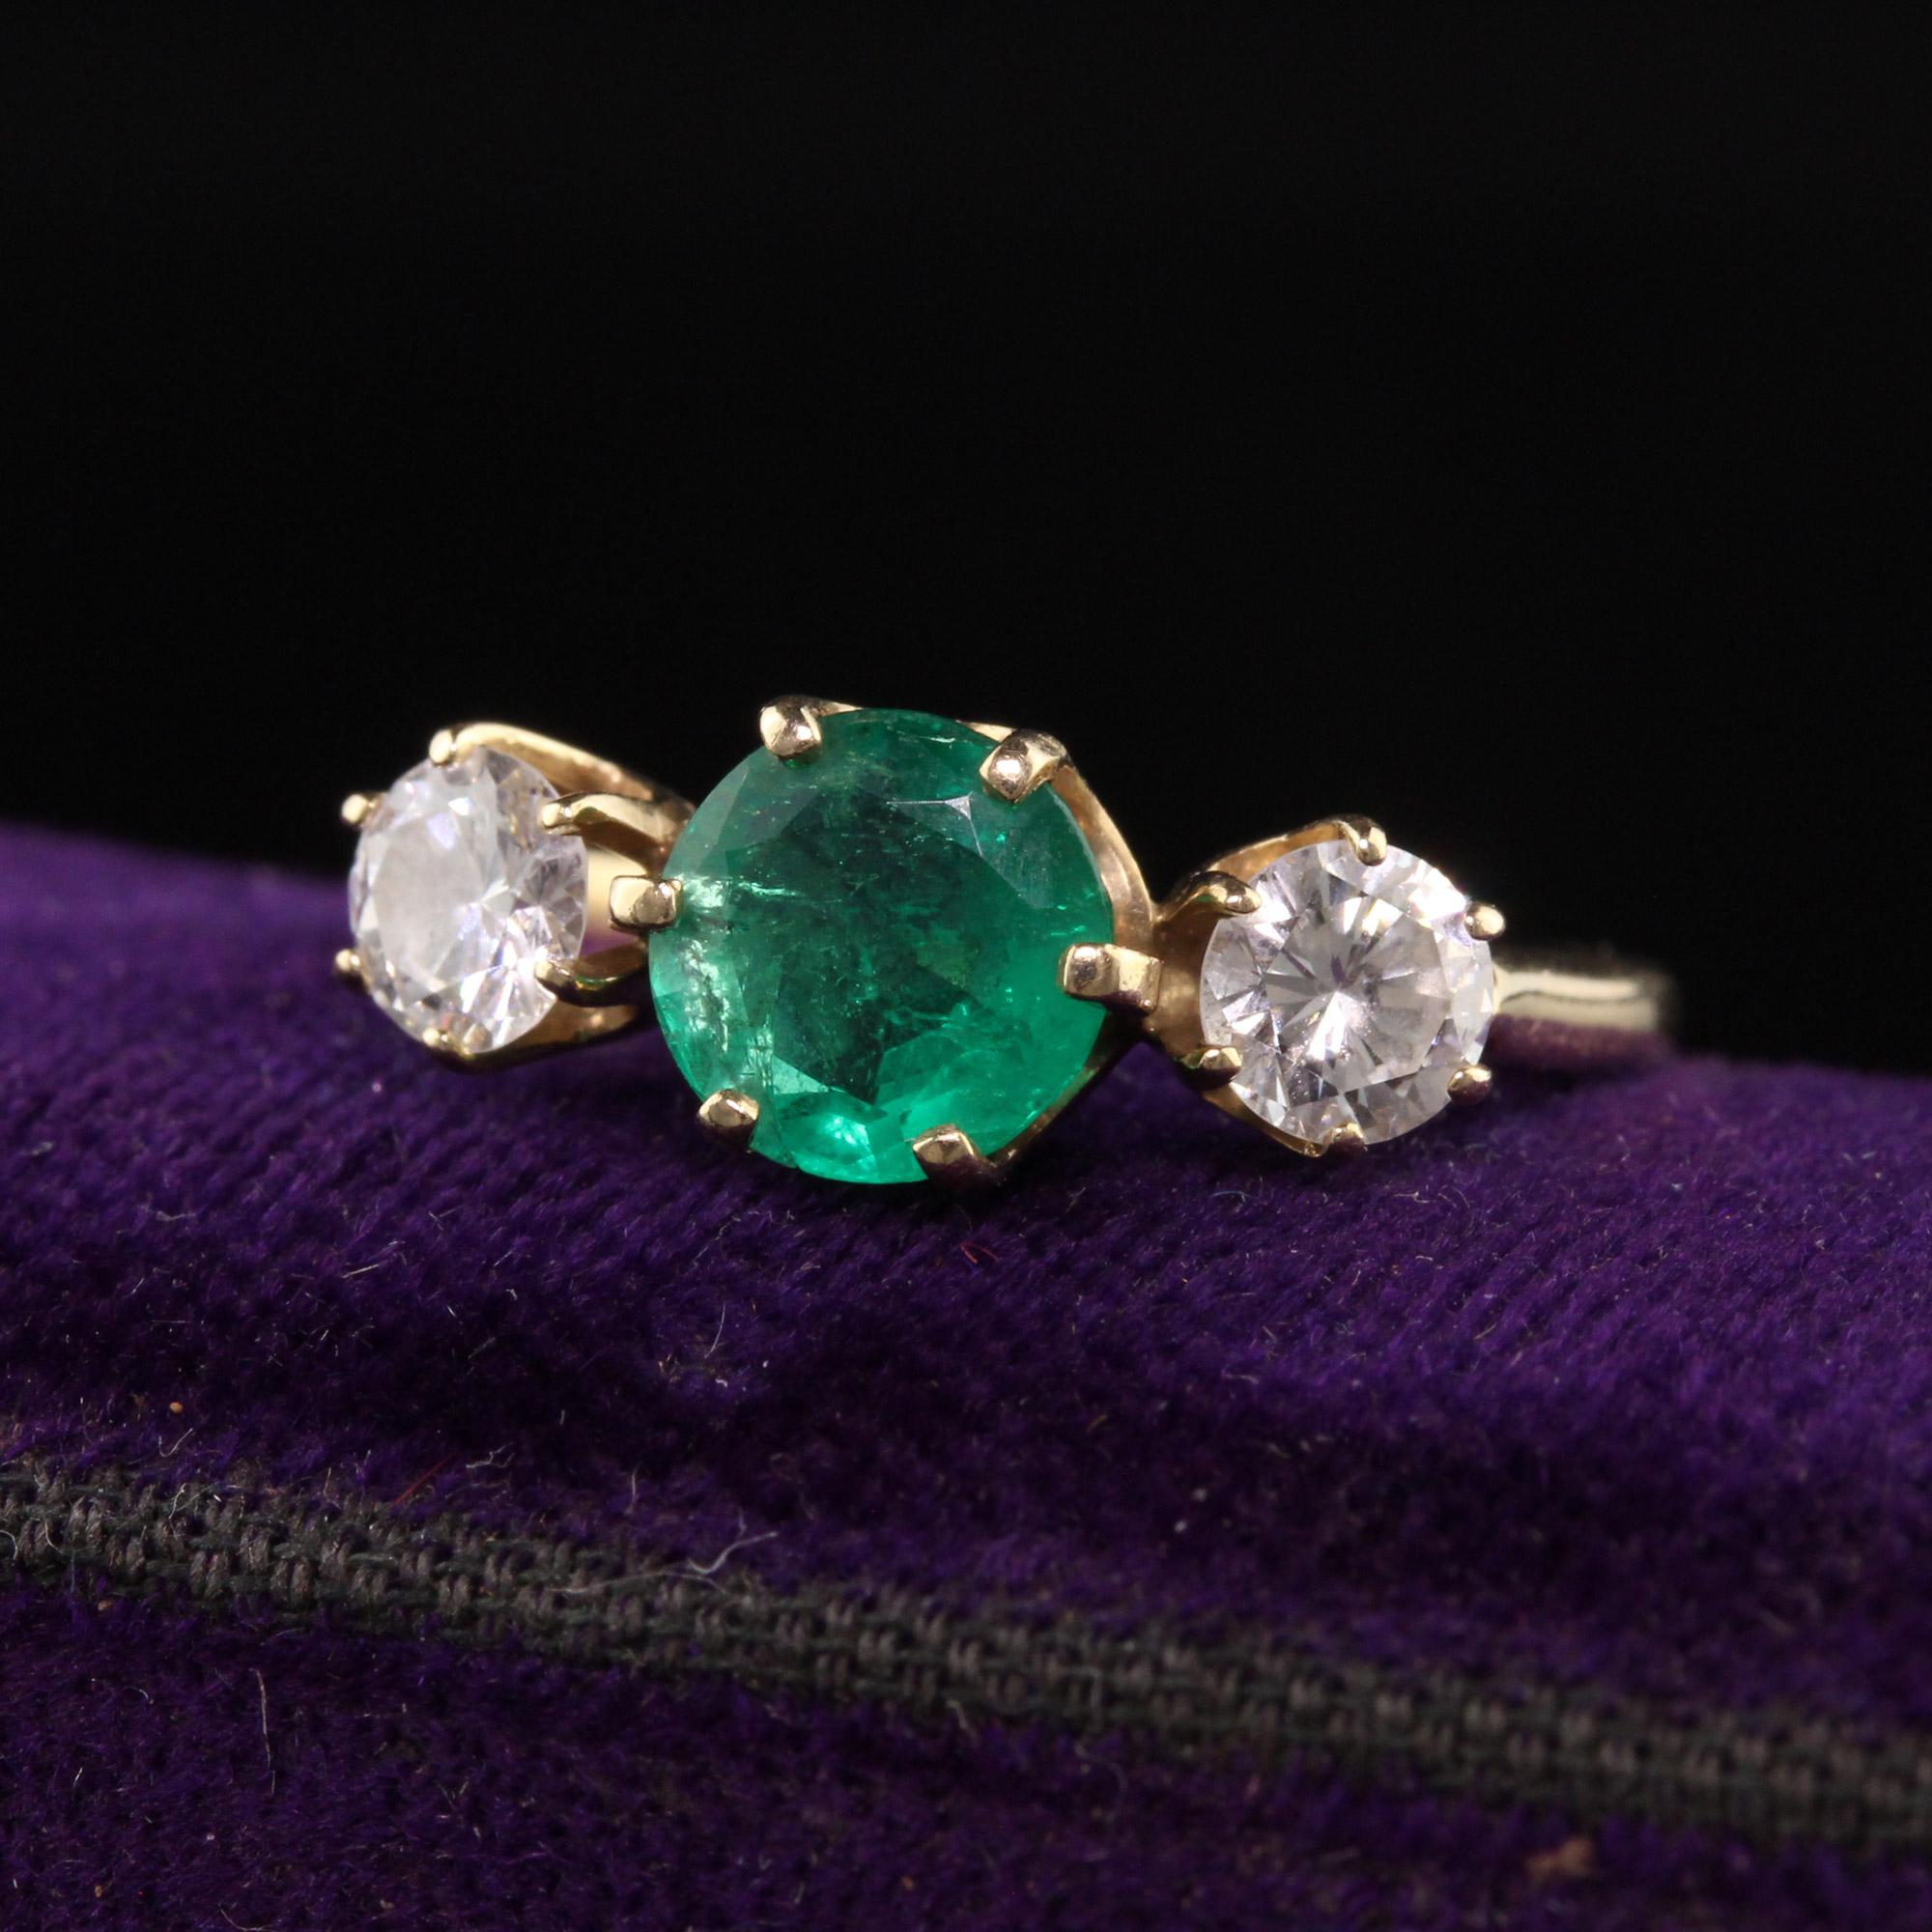 Schöner Vintage Retro 14K Gelbgold Smaragd und Diamant Dreistein-Ring. Dieser klassische Ring ist aus 14 Karat Gelbgold gefertigt. In der Mitte befindet sich ein schöner grüner Smaragd, in der Mitte zwei weiße und saubere Diamanten auf jeder